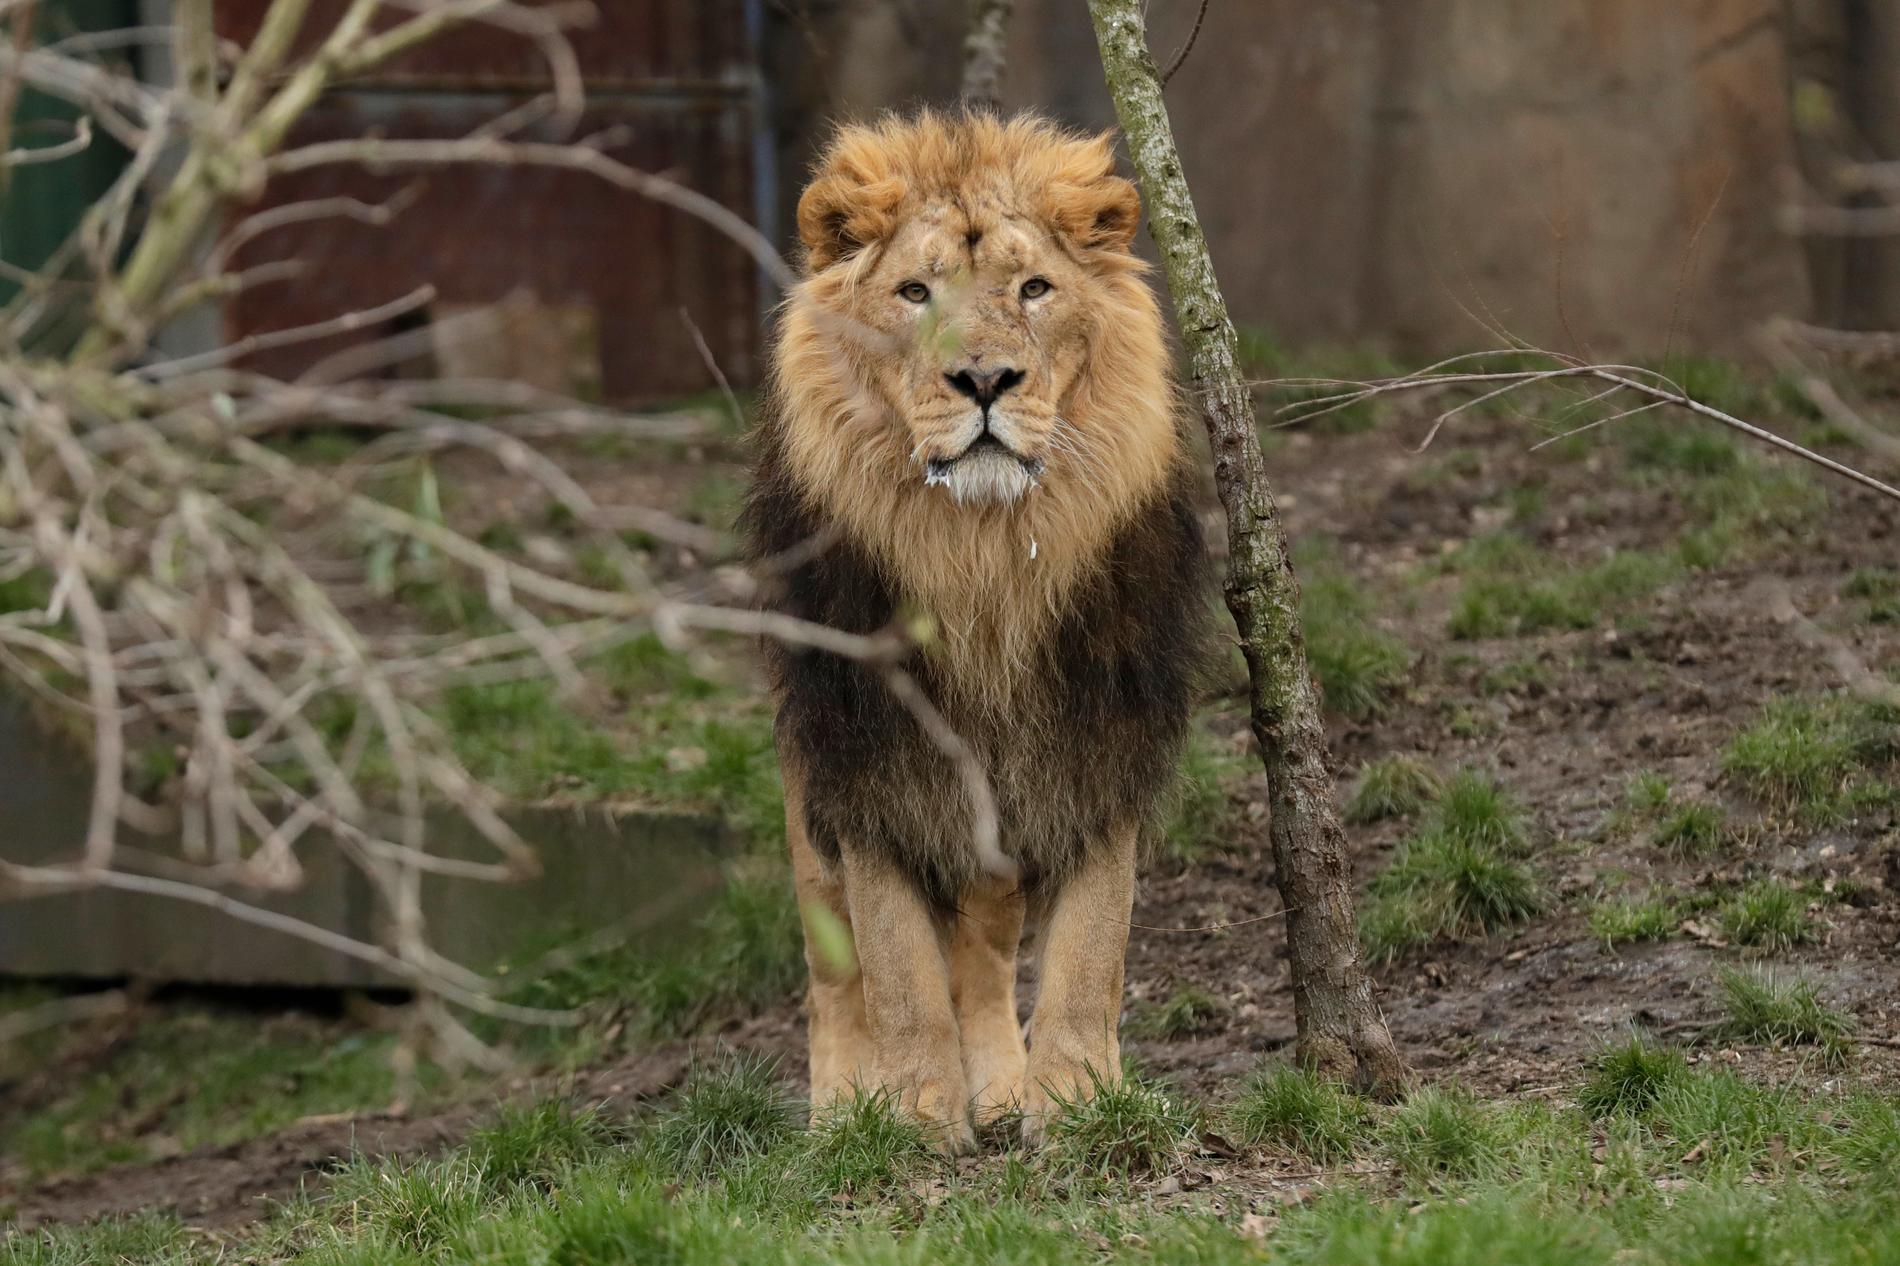 Lejonet på bilden bor på en annan djurpark och har inget med artikeln att göra. Arkivbild.